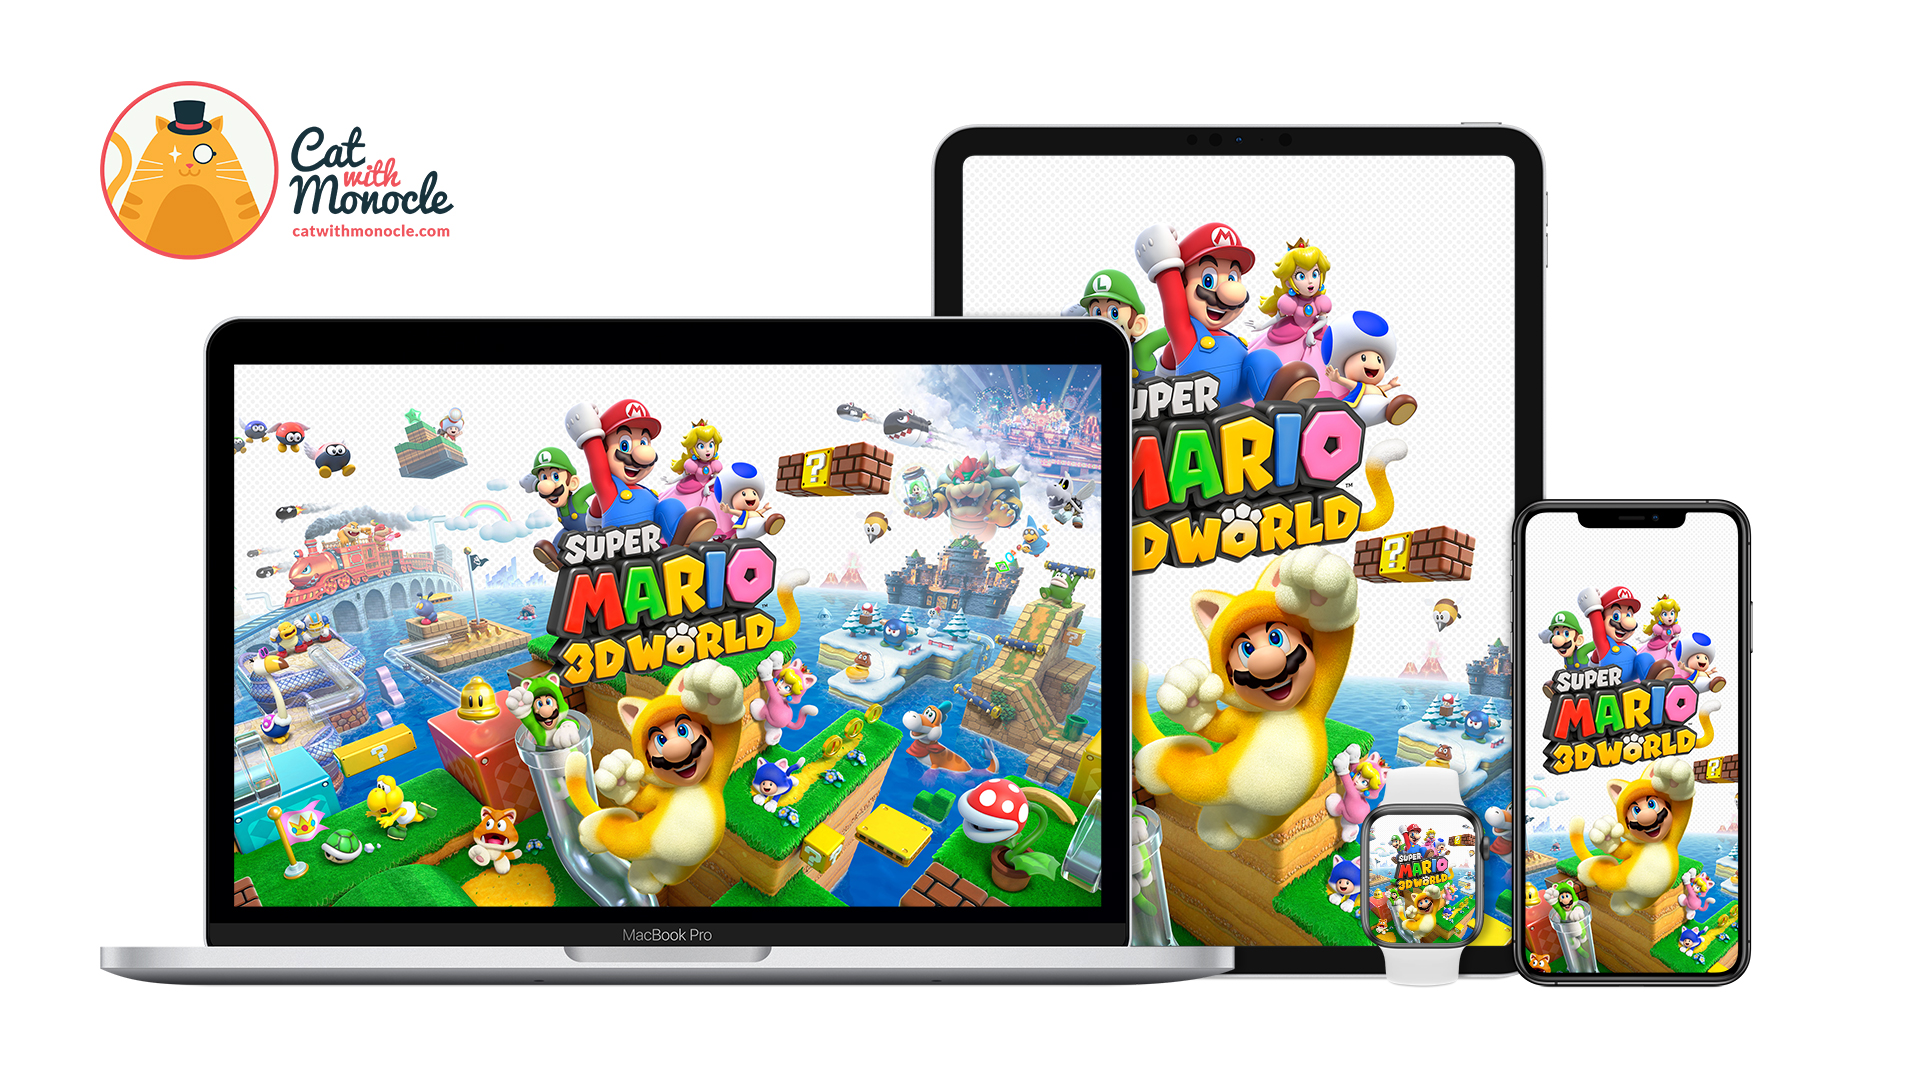 Super Mario 3D World - Cover Art